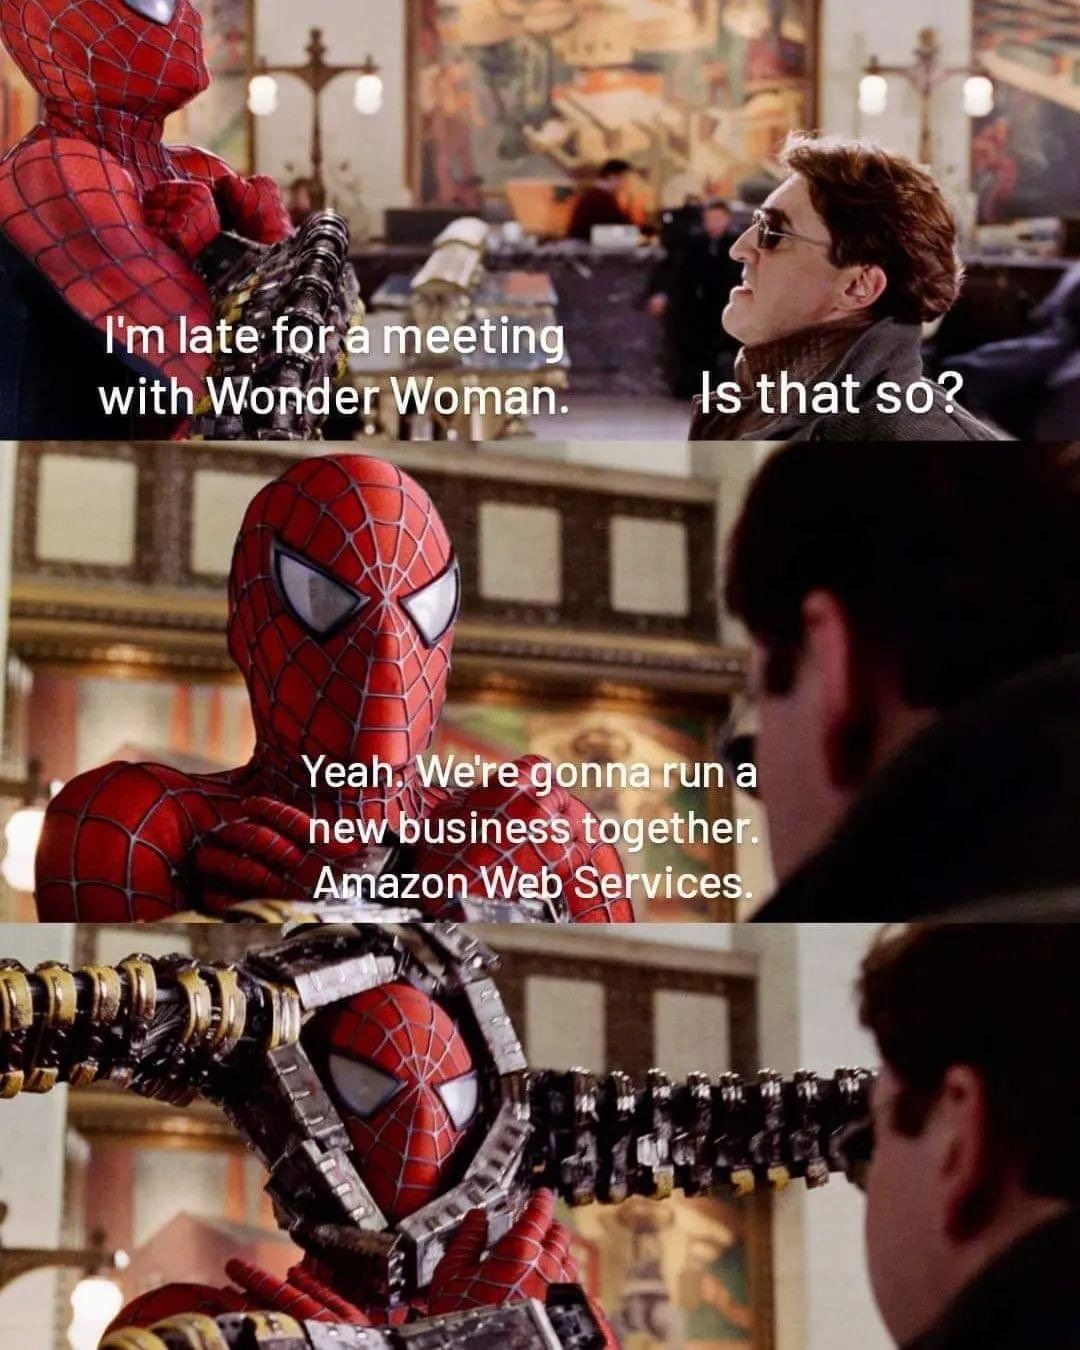 Spiderman meme for devops and AWS folks